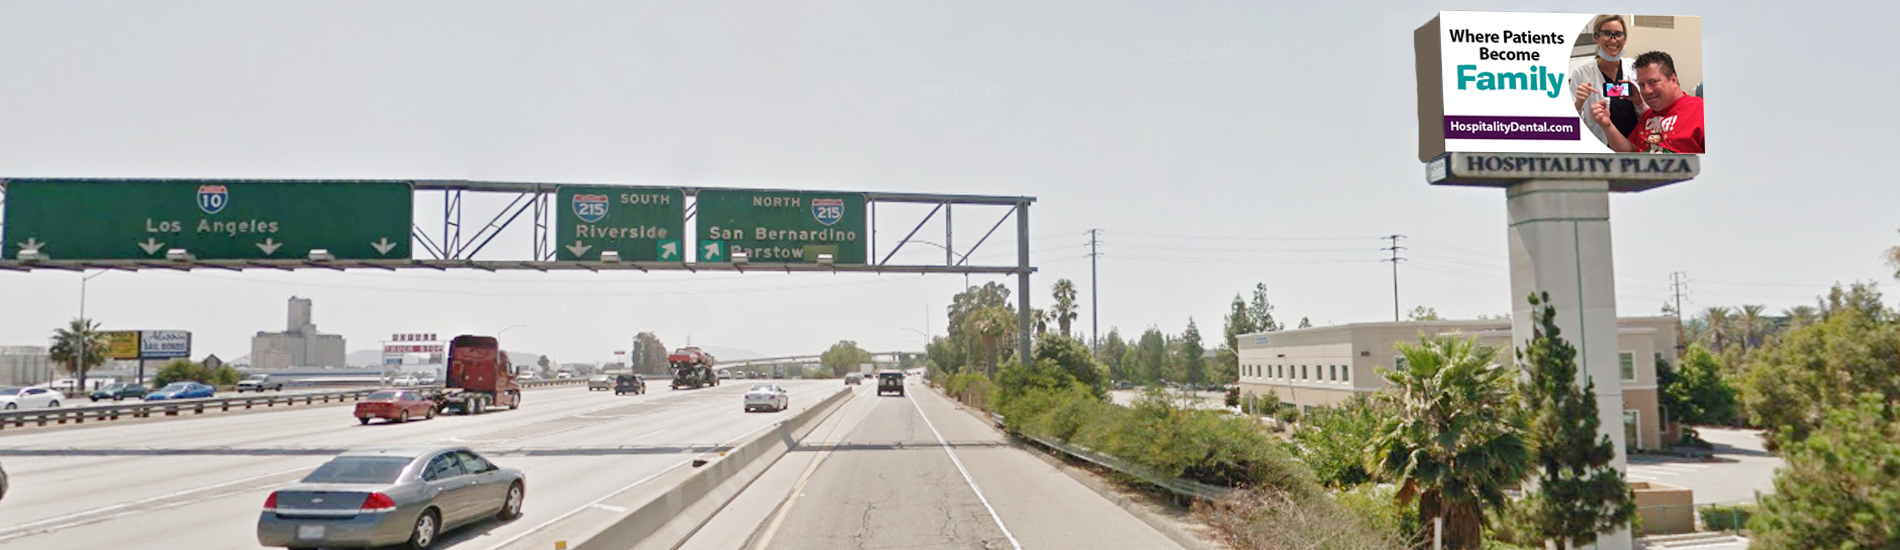 San Bernardino freeway sign, San Bernardino freeway digital sign, San Bernardino freeway lighted sign, San Bernardino freeway advertising sign